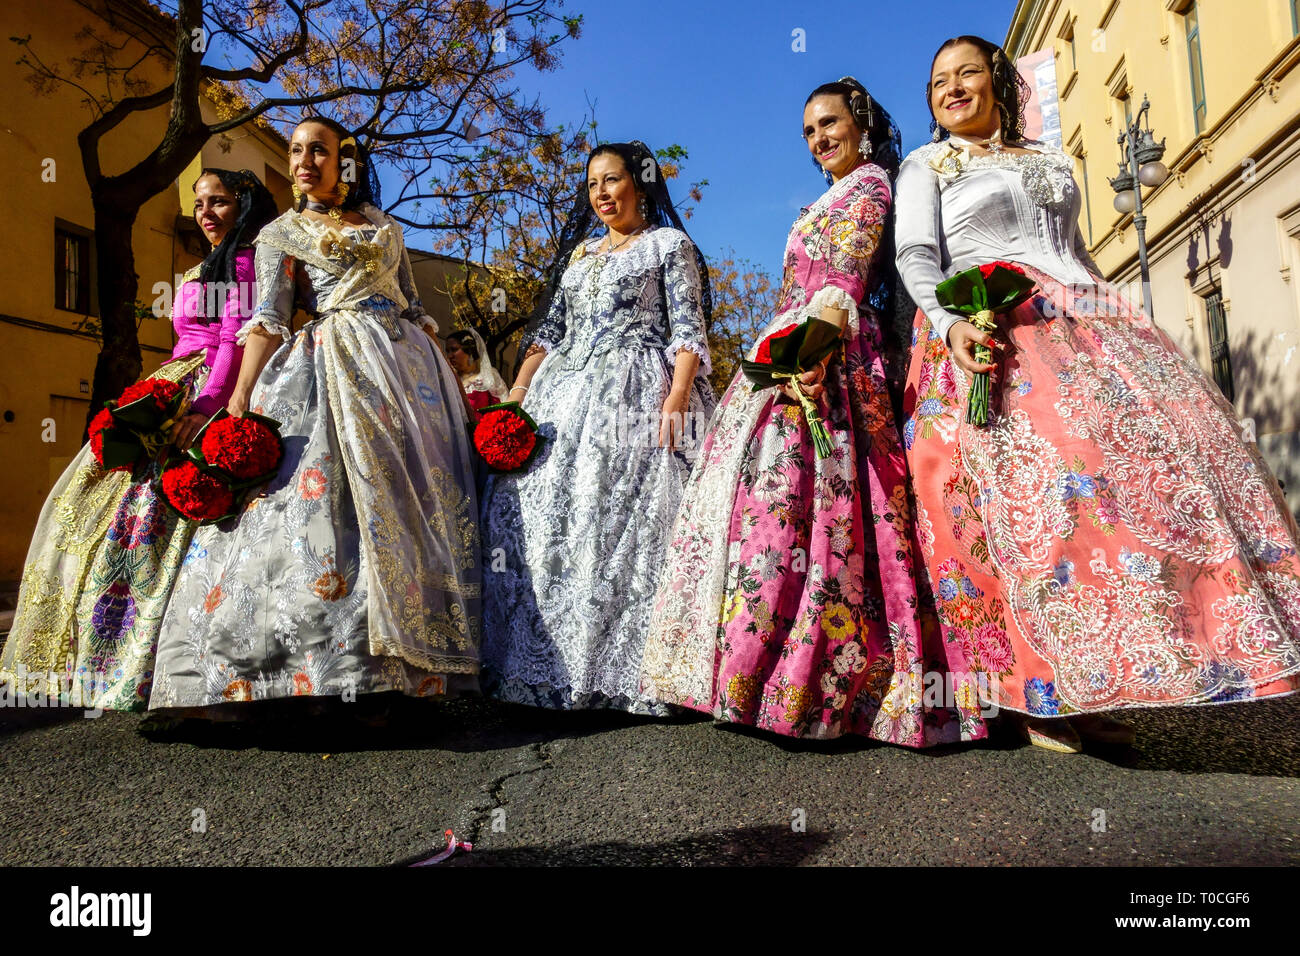 Valencia Fallas, Donne in costumi tradizionali, processione alla Vergine Maria con fiori in suo onore, Spagna festival Las Fallas Valencia City Foto Stock